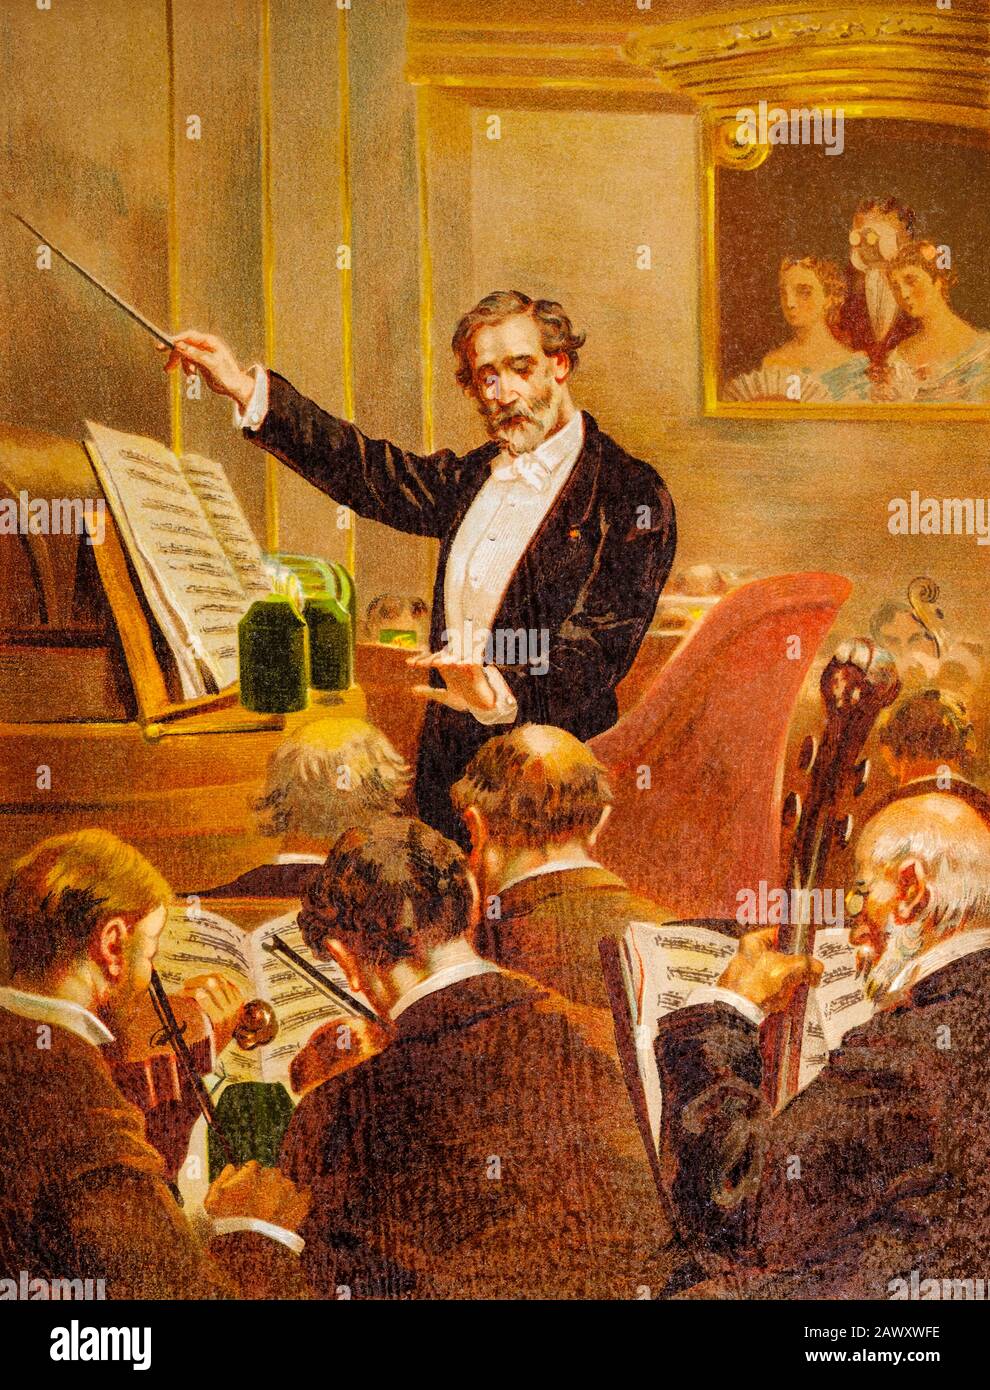 Giuseppe Fortunino Francesco Verdi (le Roncole, Busseto, Italie, 10 octobre 1813-Milan, 27 janvier 1901) est un compositeur d'opéra italien du XIXe siècle Banque D'Images